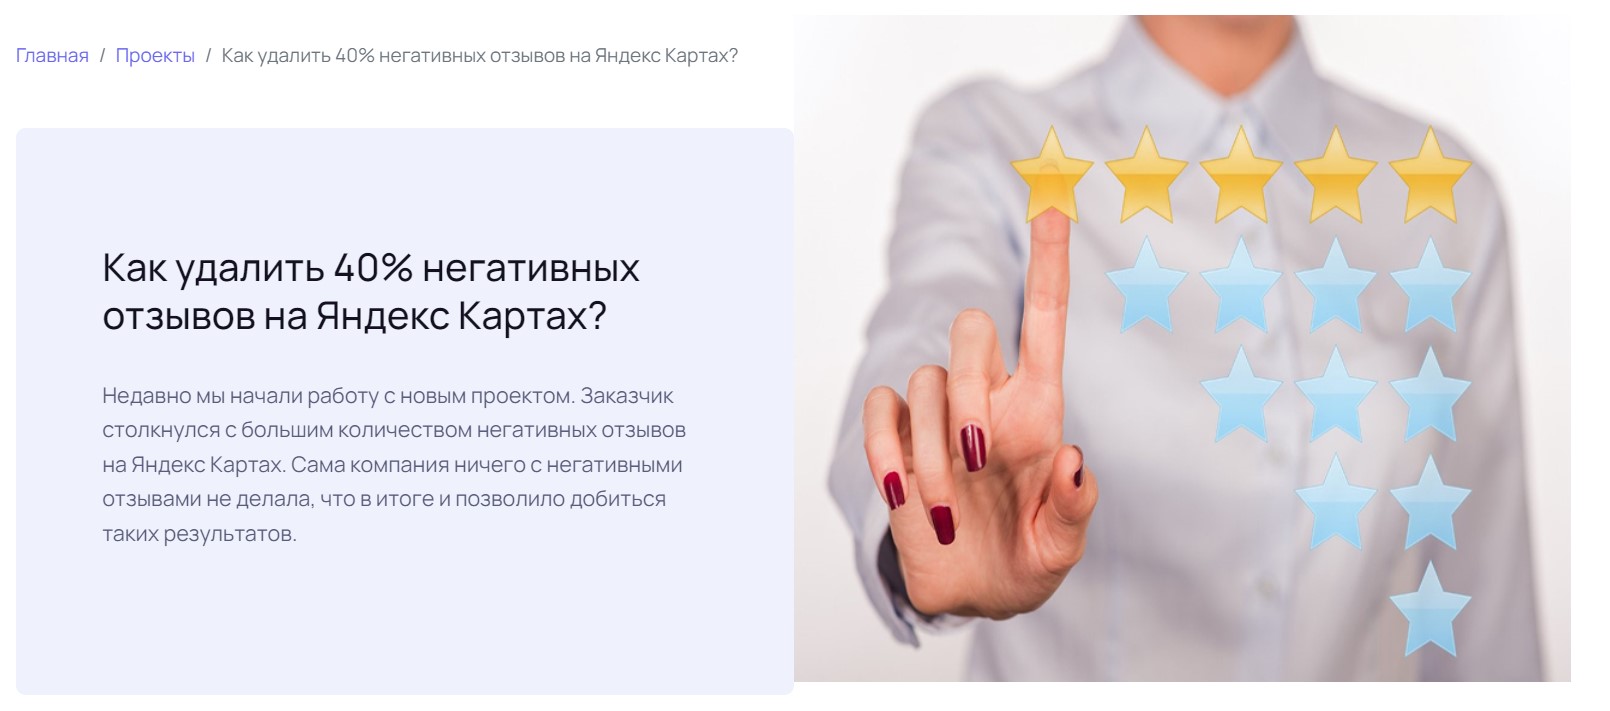 Как удалить 40% негативных отзывов на Яндекс Картах?